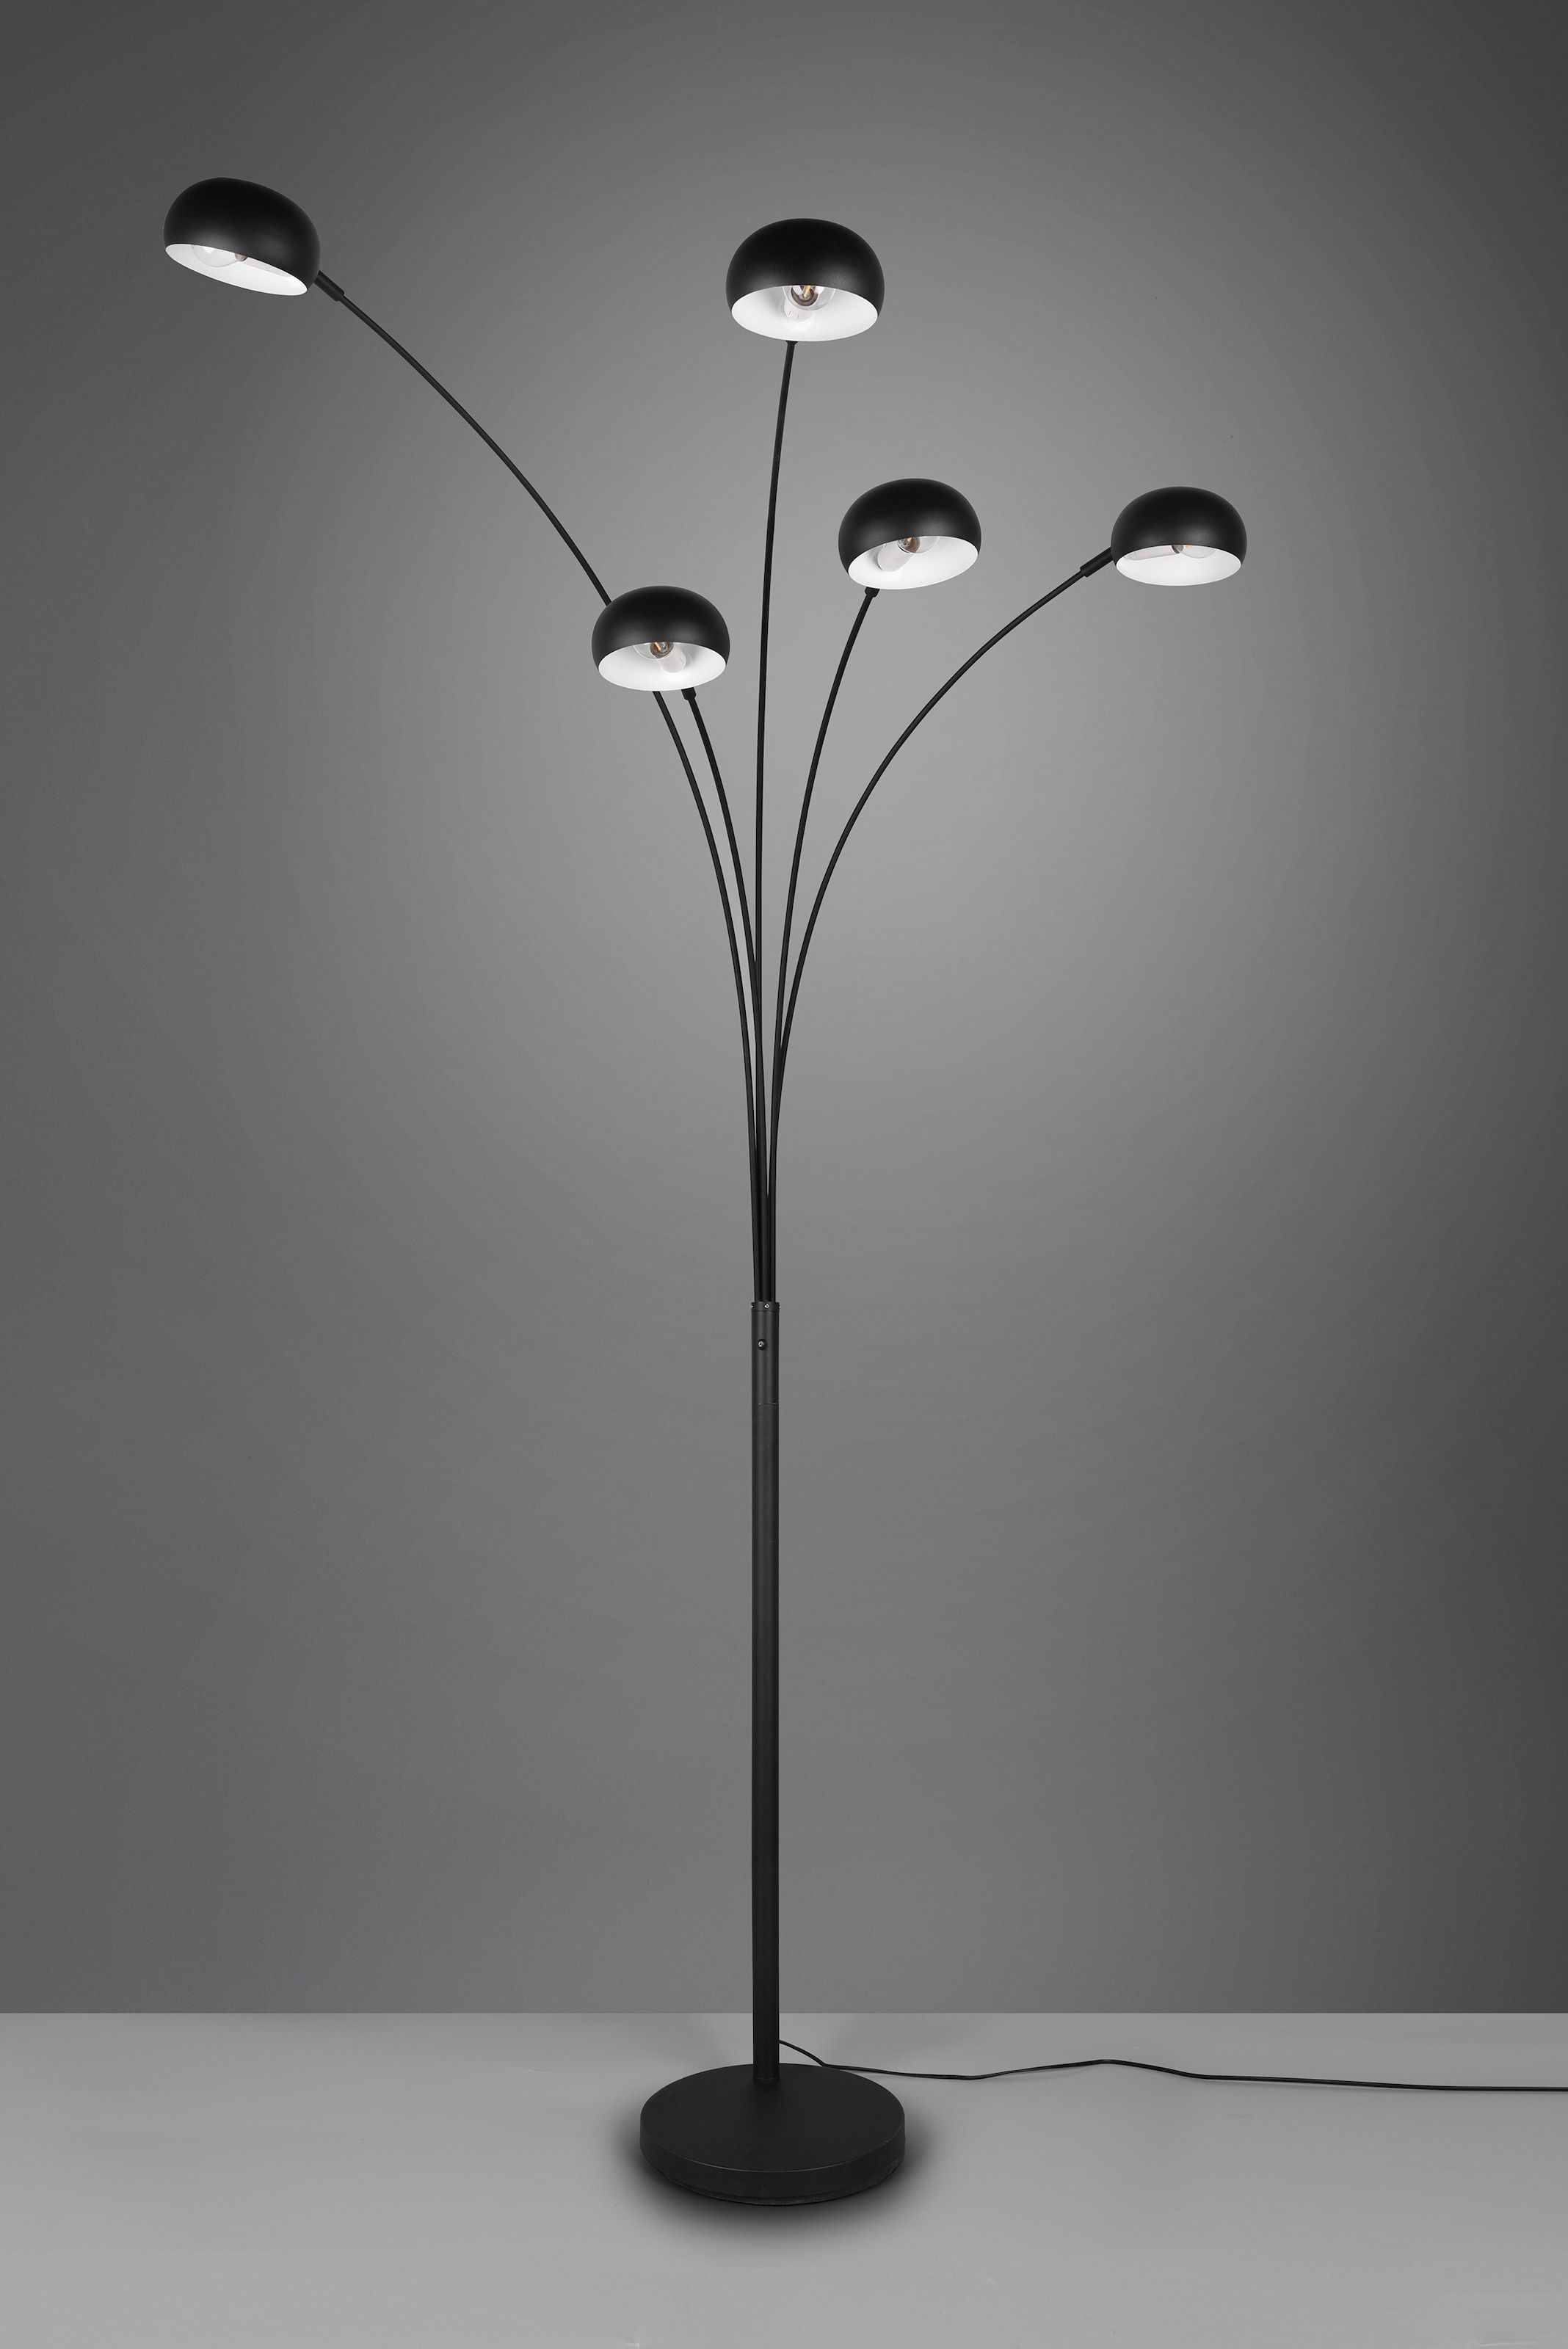 TRIO Leuchten Stehlampe »DITO, Stehleuchte 5-flammig«, 5 flammig-flammig, Höhe 210 cm, Auslage 70 cm, mit 2 m Kabel, Kippschalter